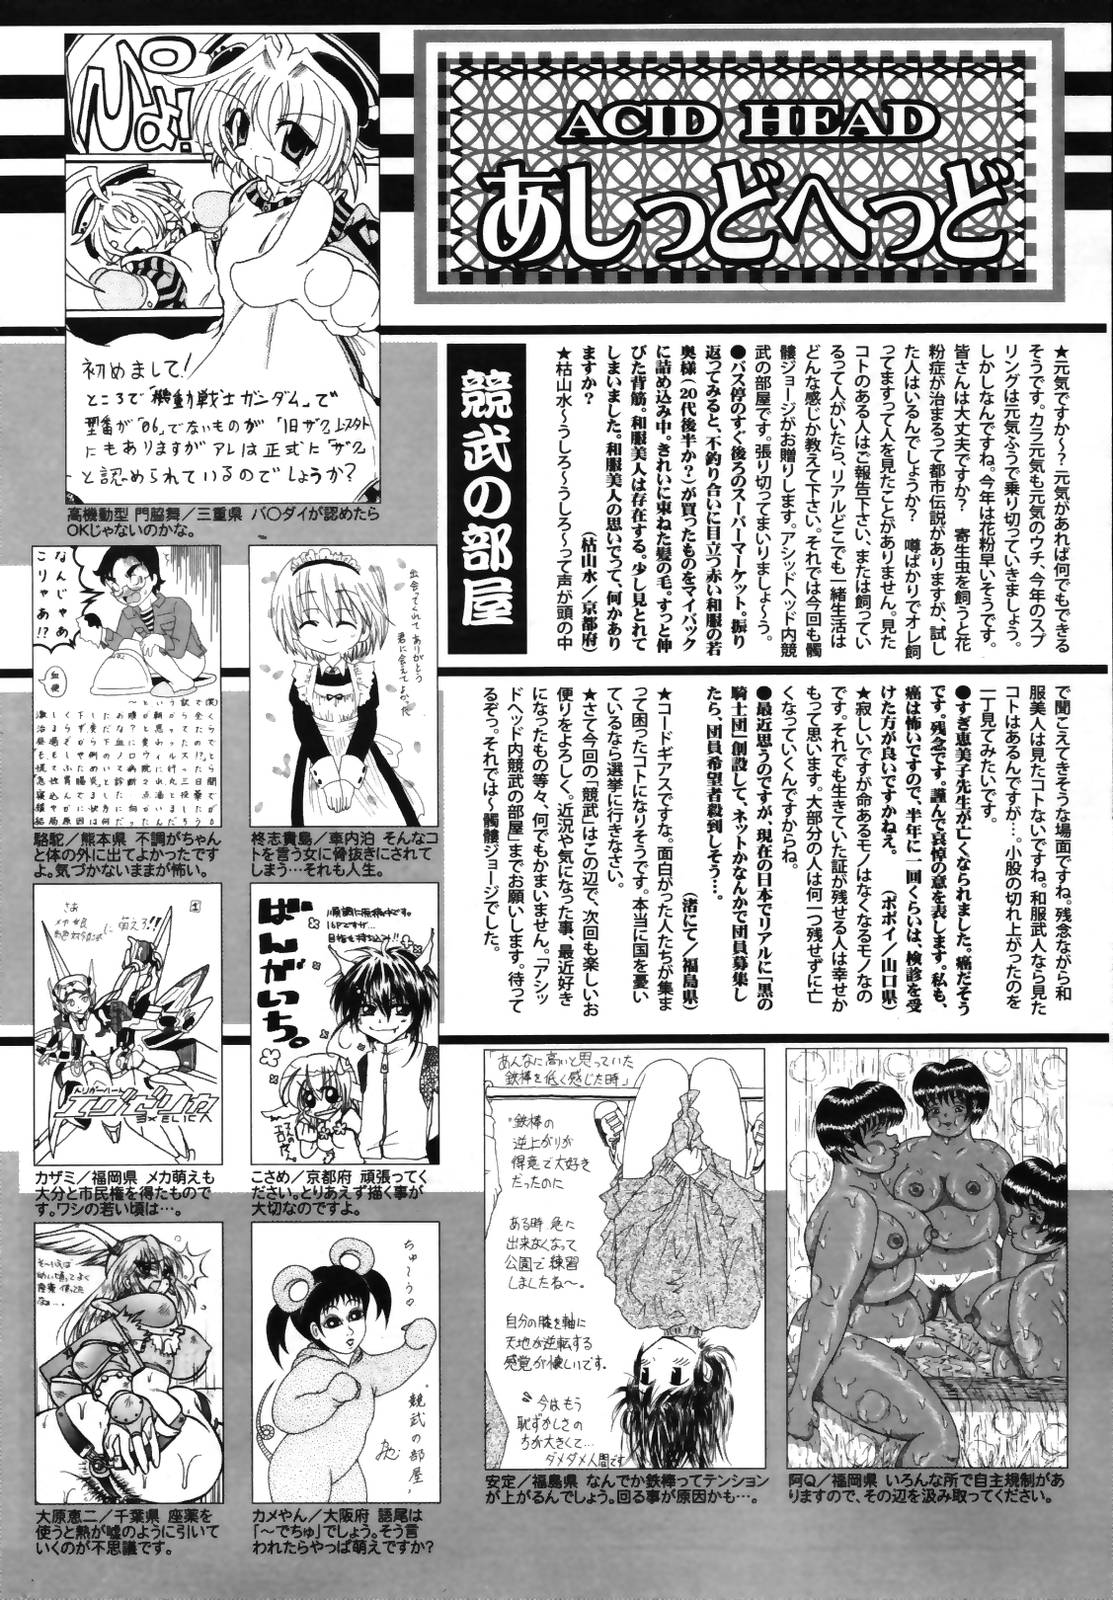 Manga Bangaichi 2007-05 漫画ばんがいち 2007年5月号